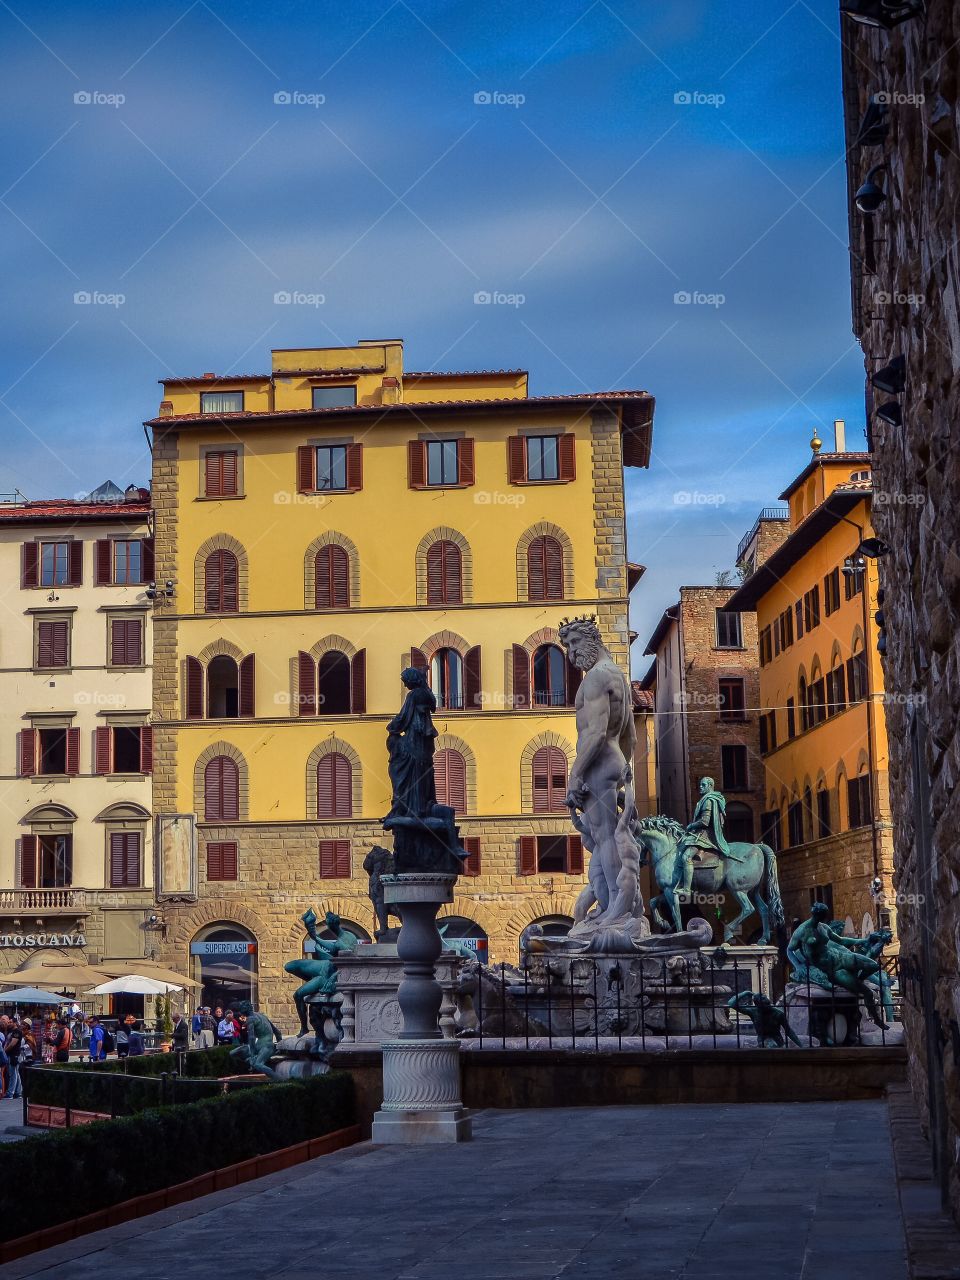 Plaza de la Señoría (Florence - Italy)